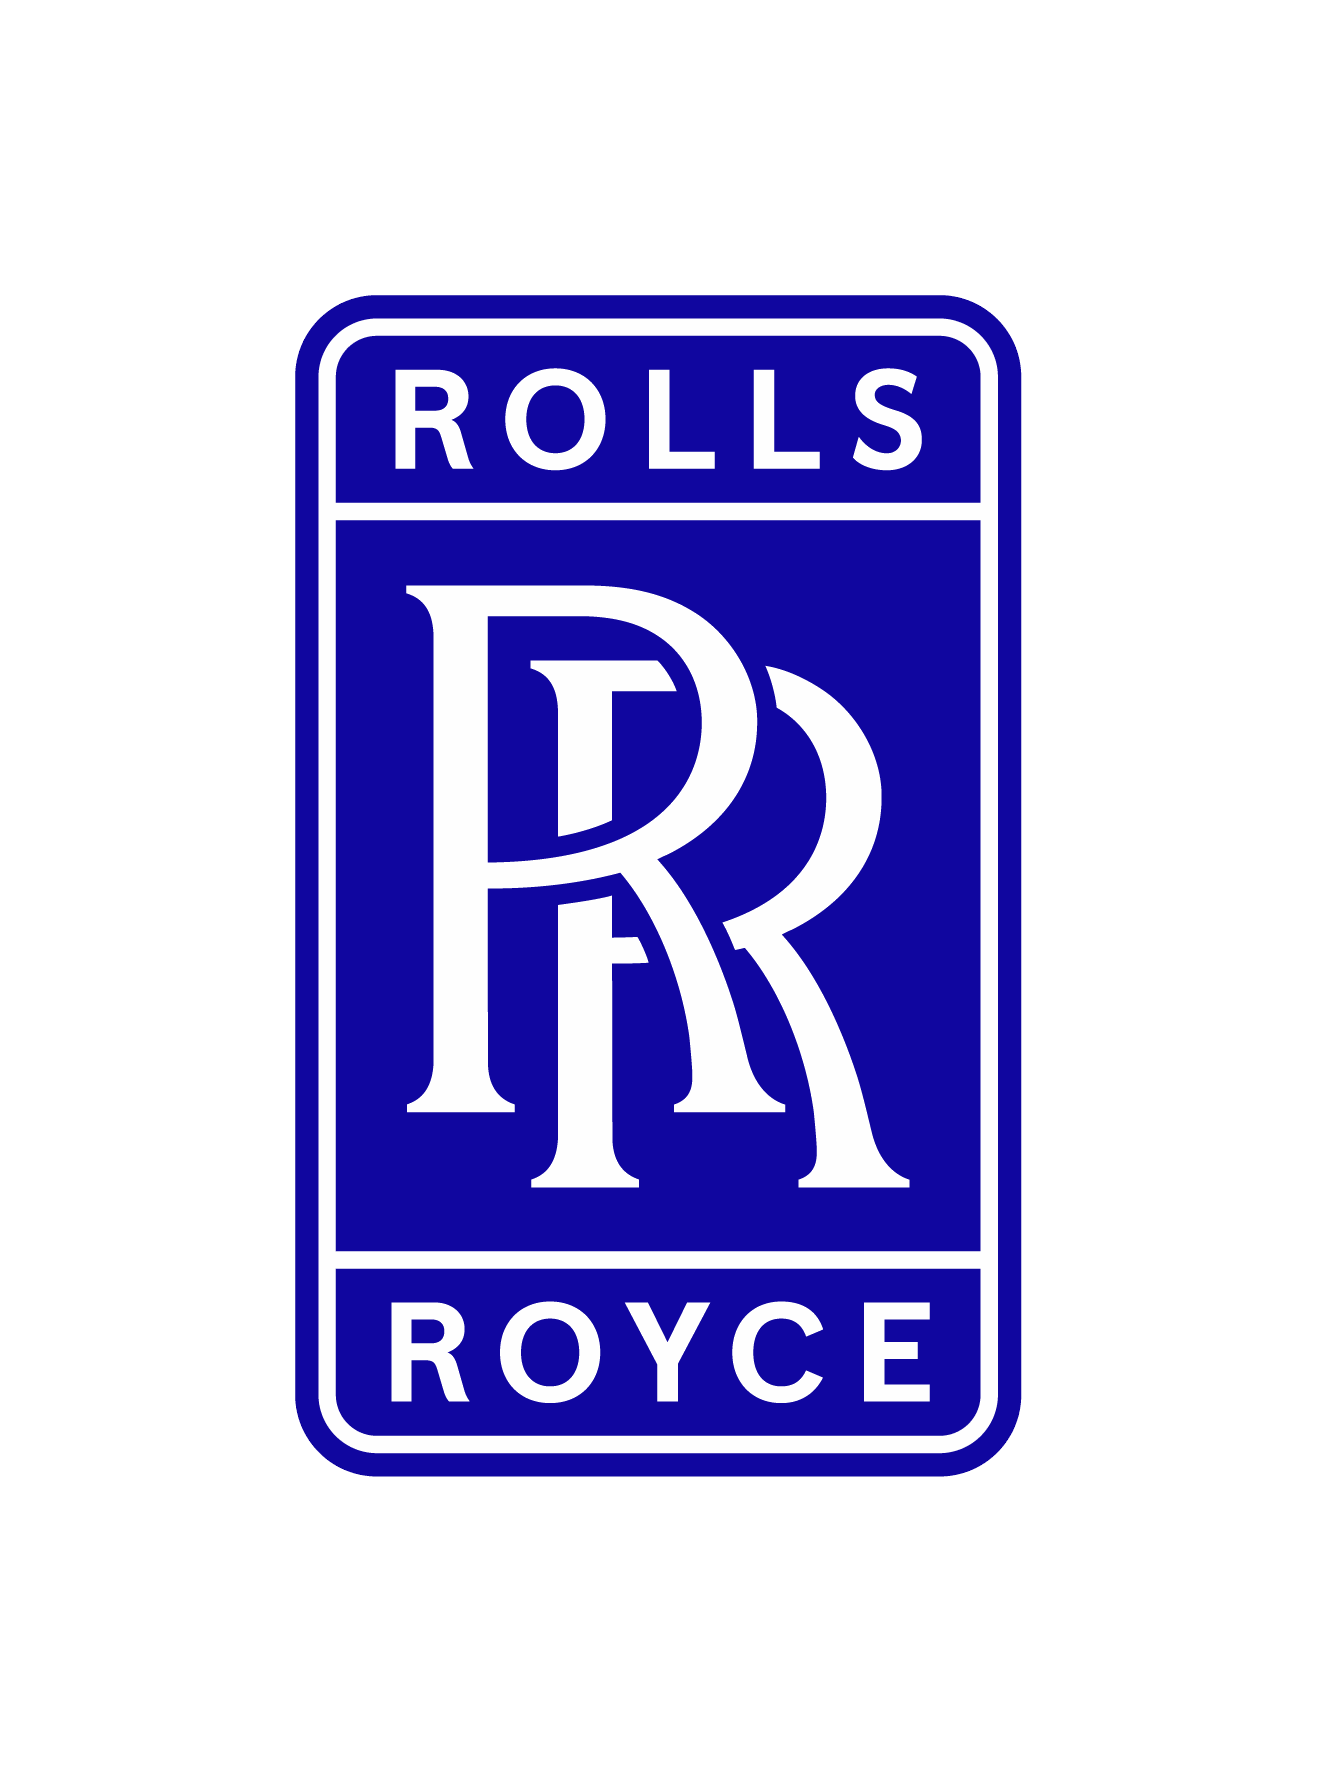 Logo Rolls-Royce